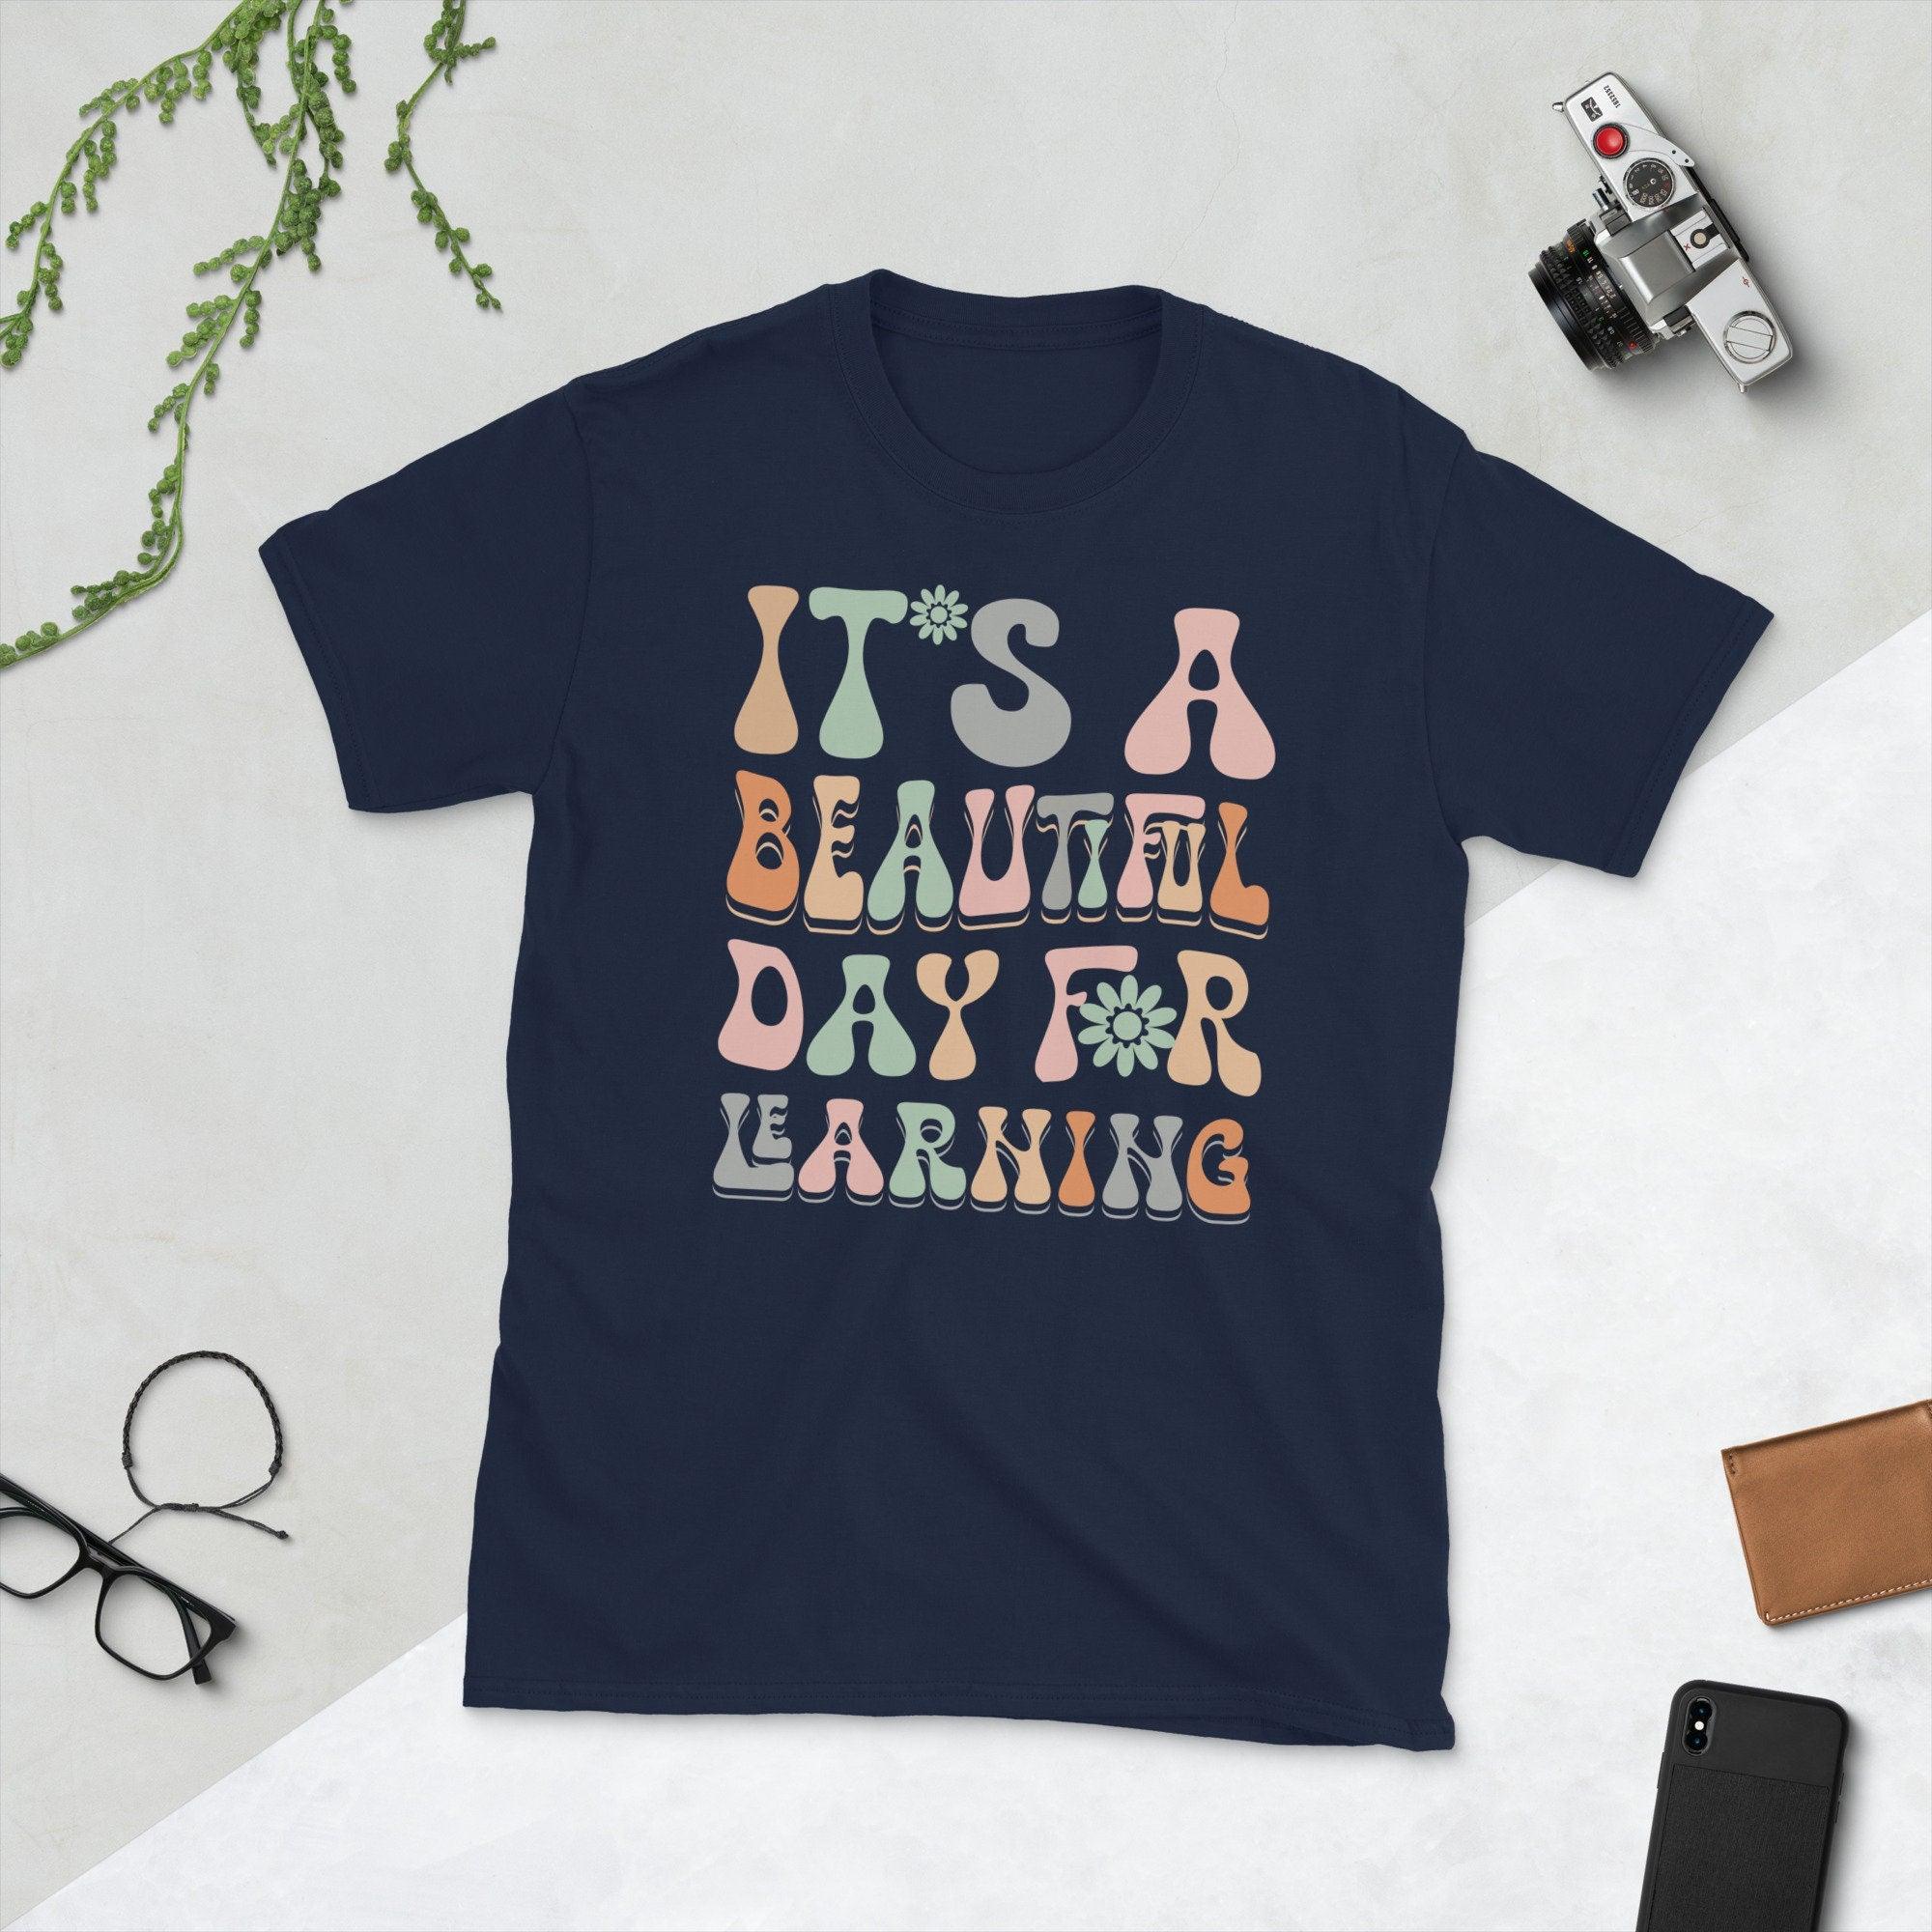 レトロ教師シャツ レディース 学習にとって美しい日です Tシャツ 面白い新学期教師生活シャツ トップス - plusminusco.com